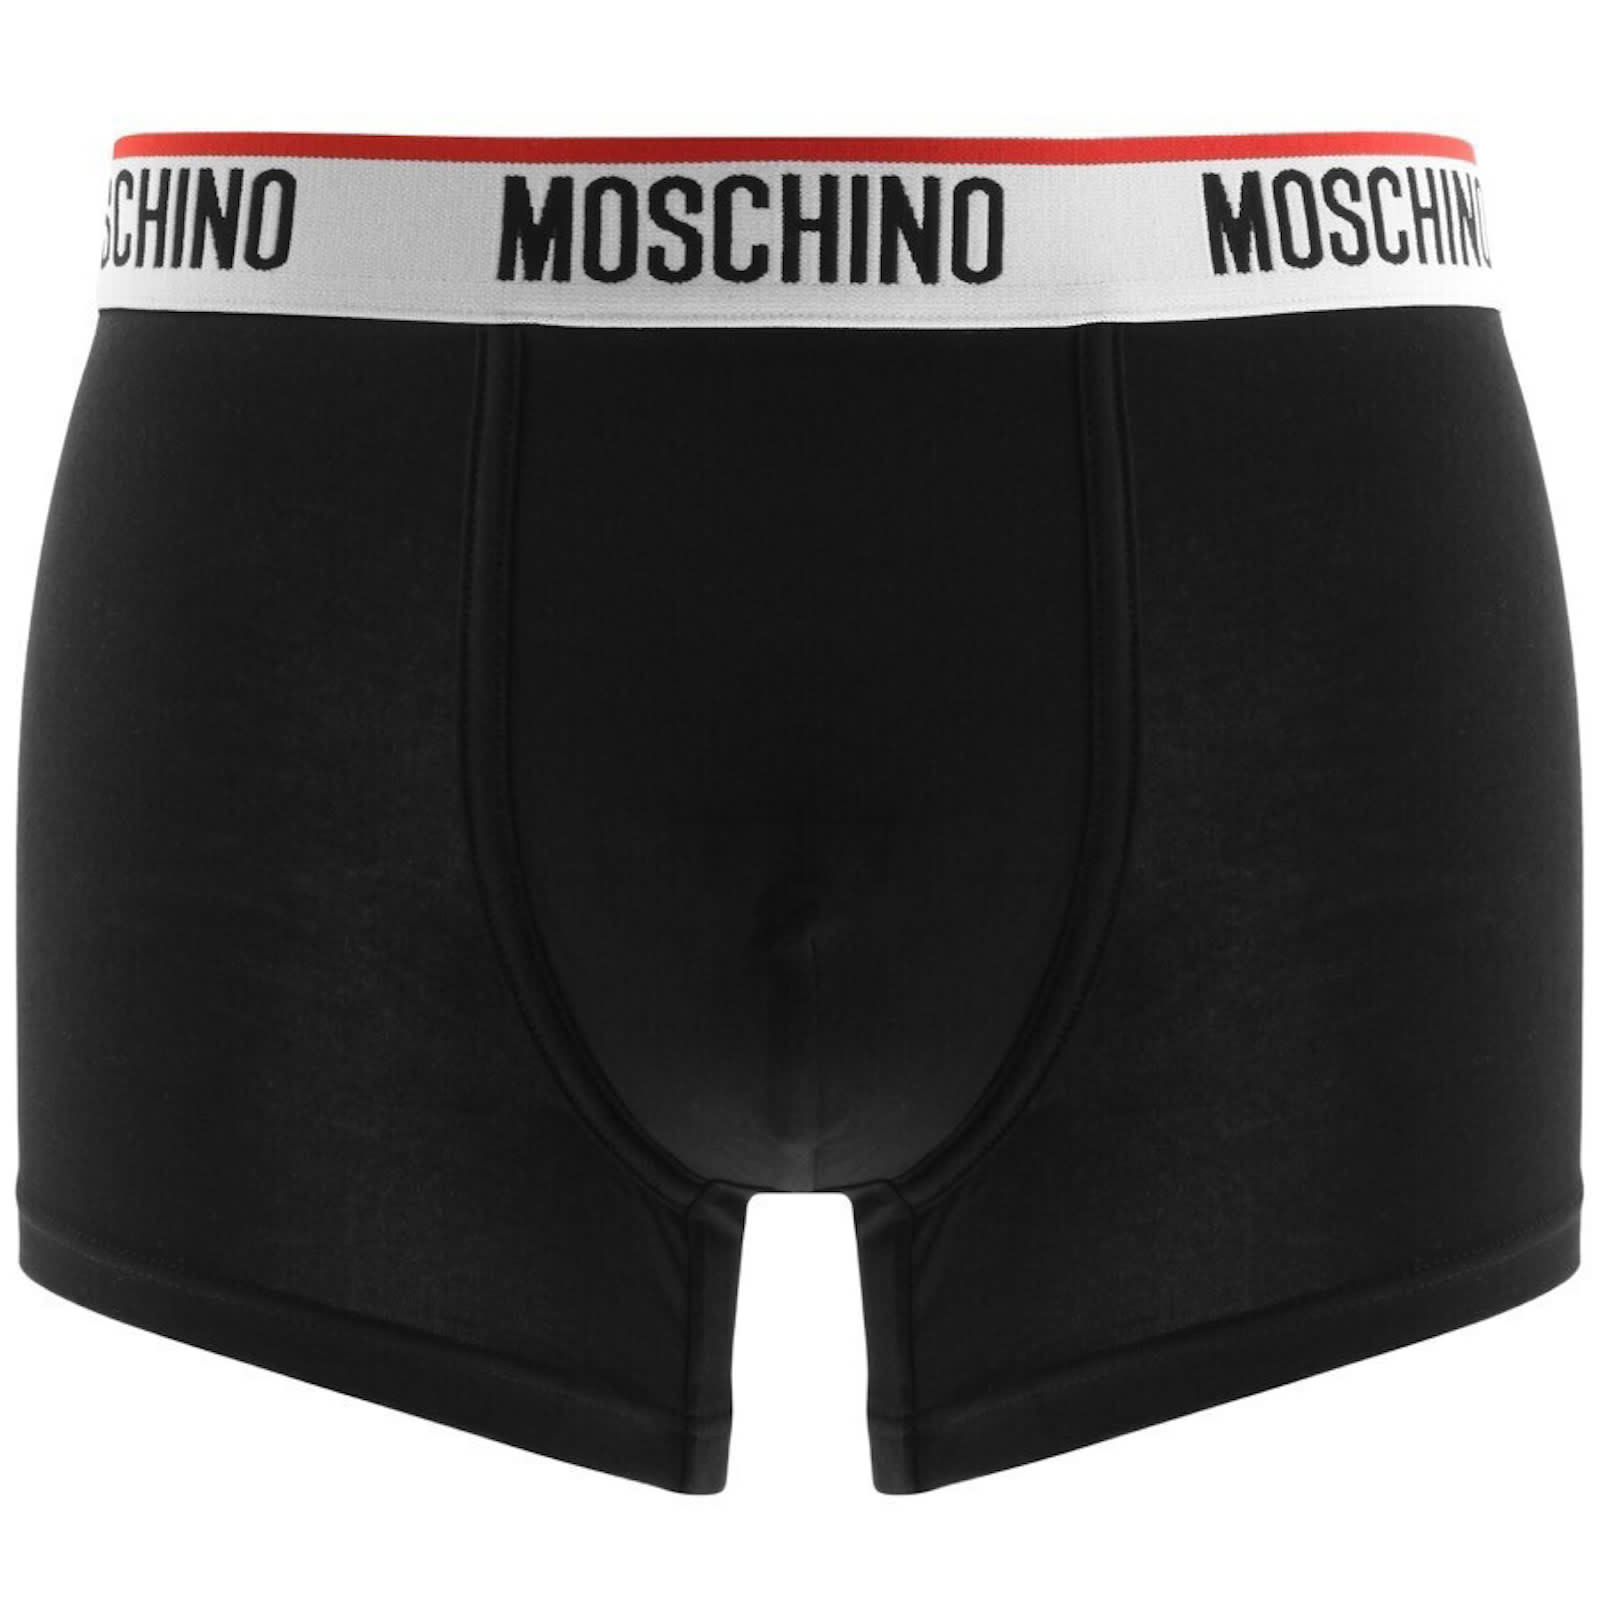 Moschino Underwear 3 Pack Trunks Grey